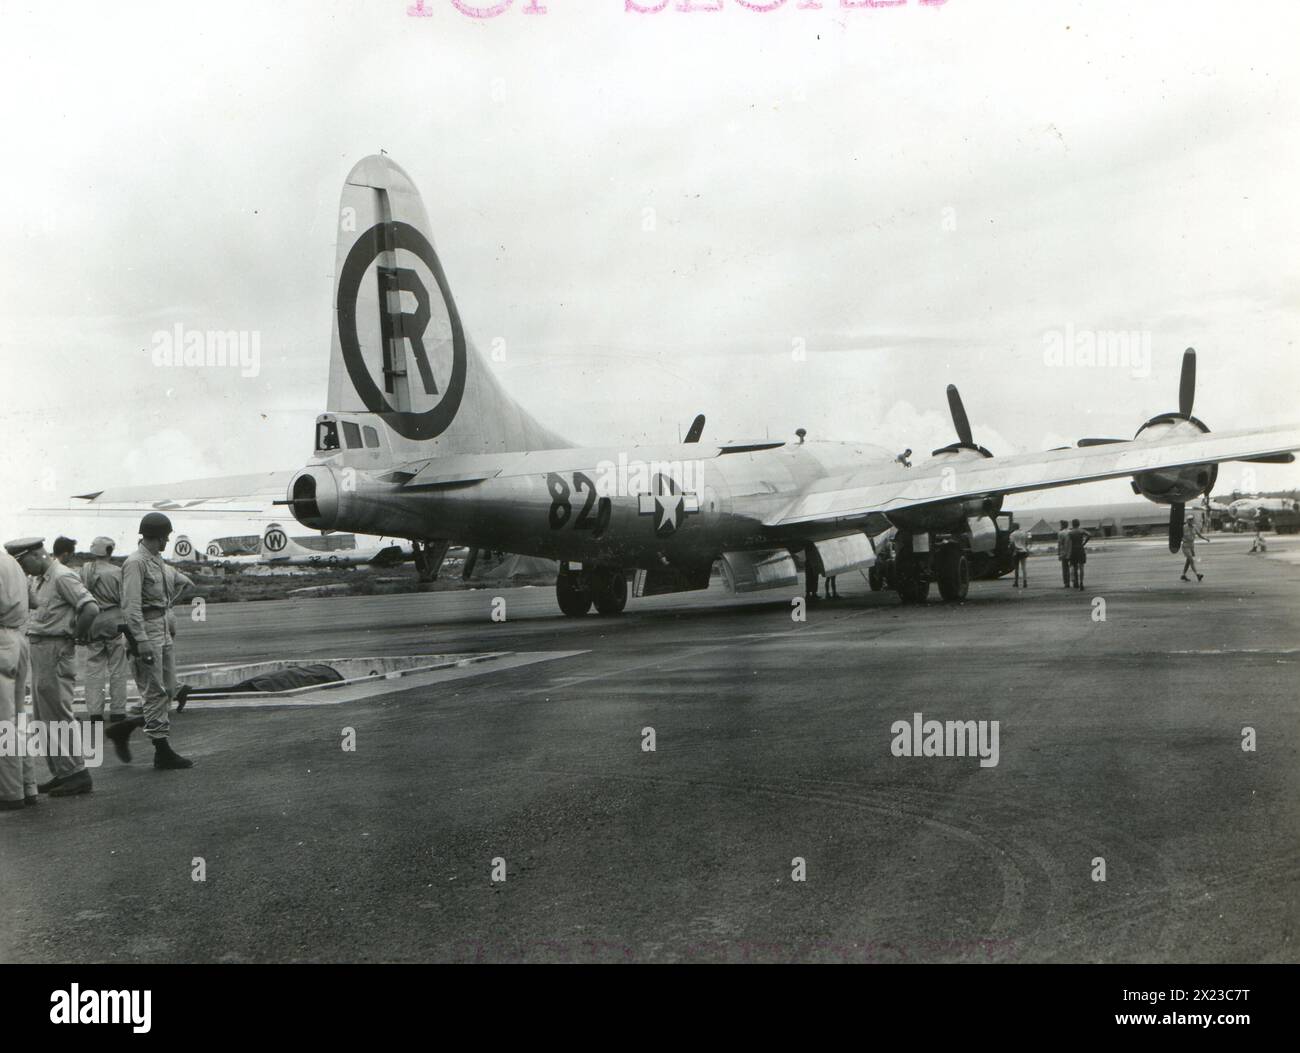 1945. August, Tinian – bringt die Enola Gay in Position über der Bombengrube. Vorbereitung zum Laden von Little Boy. Atombombe. Stockfoto